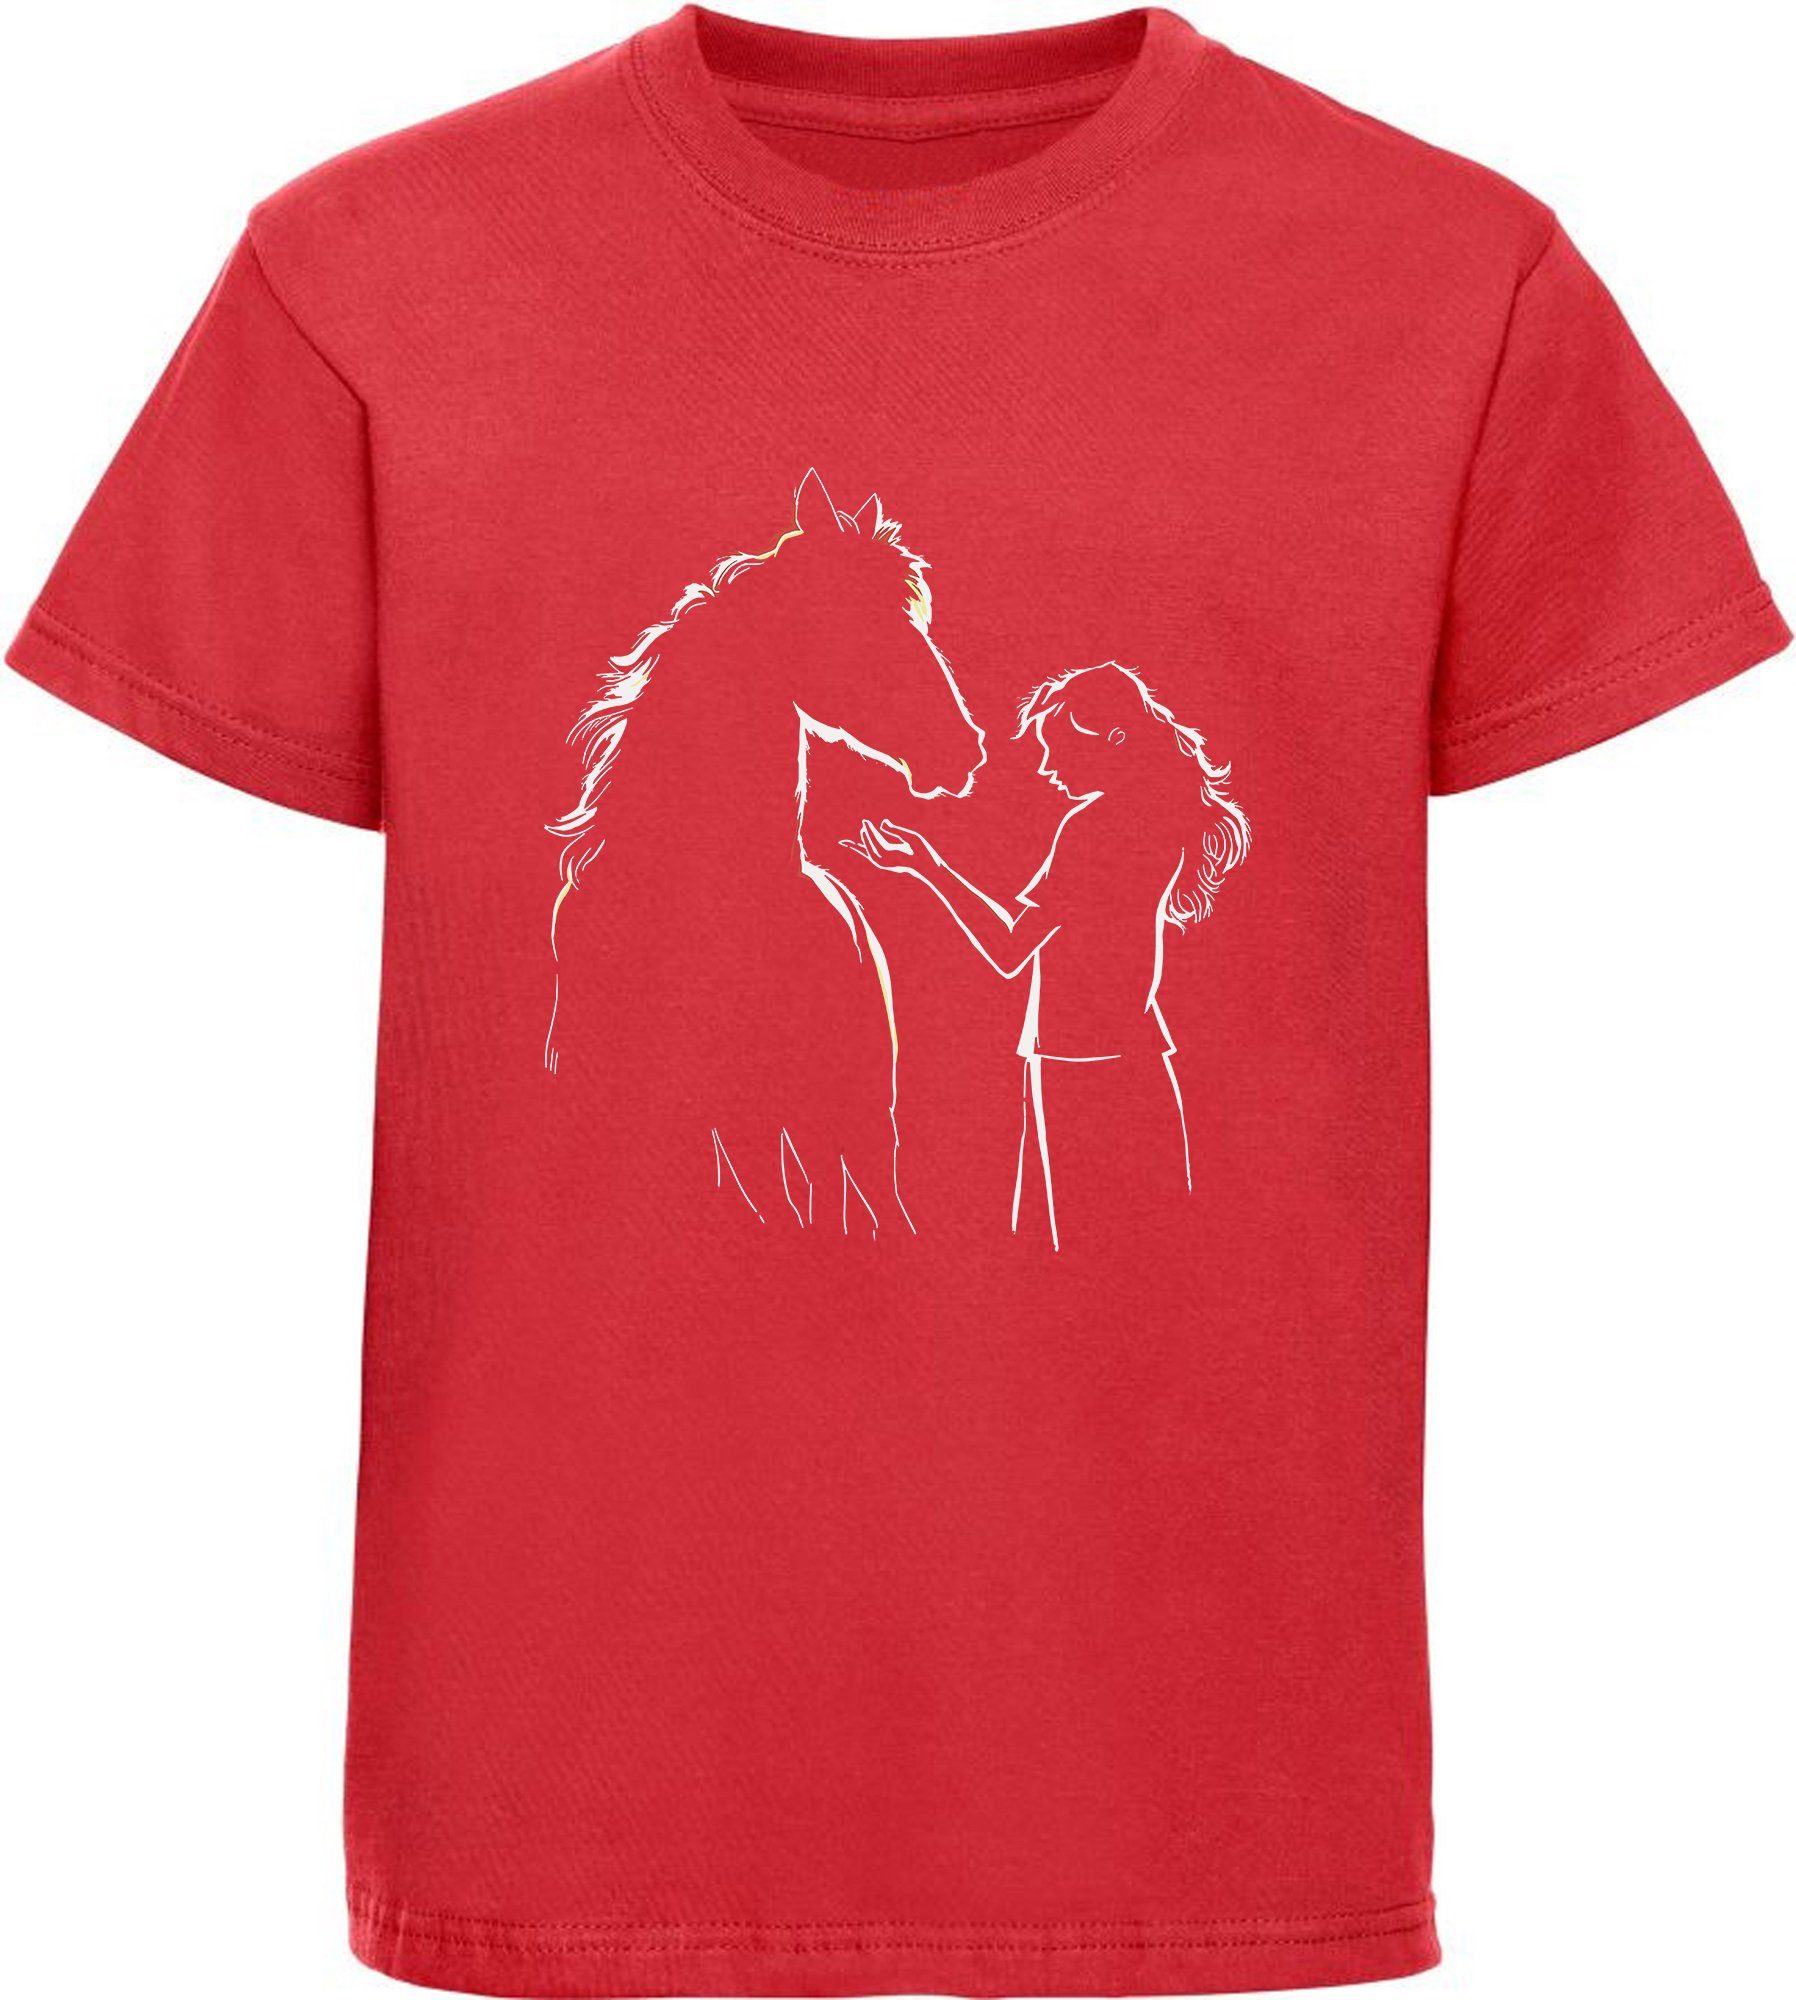 MyDesign24 Print-Shirt bedrucktes Mädchen T-Shirt Pferde Silhouette mit Frau Baumwollshirt mit Aufdruck, i139 rot